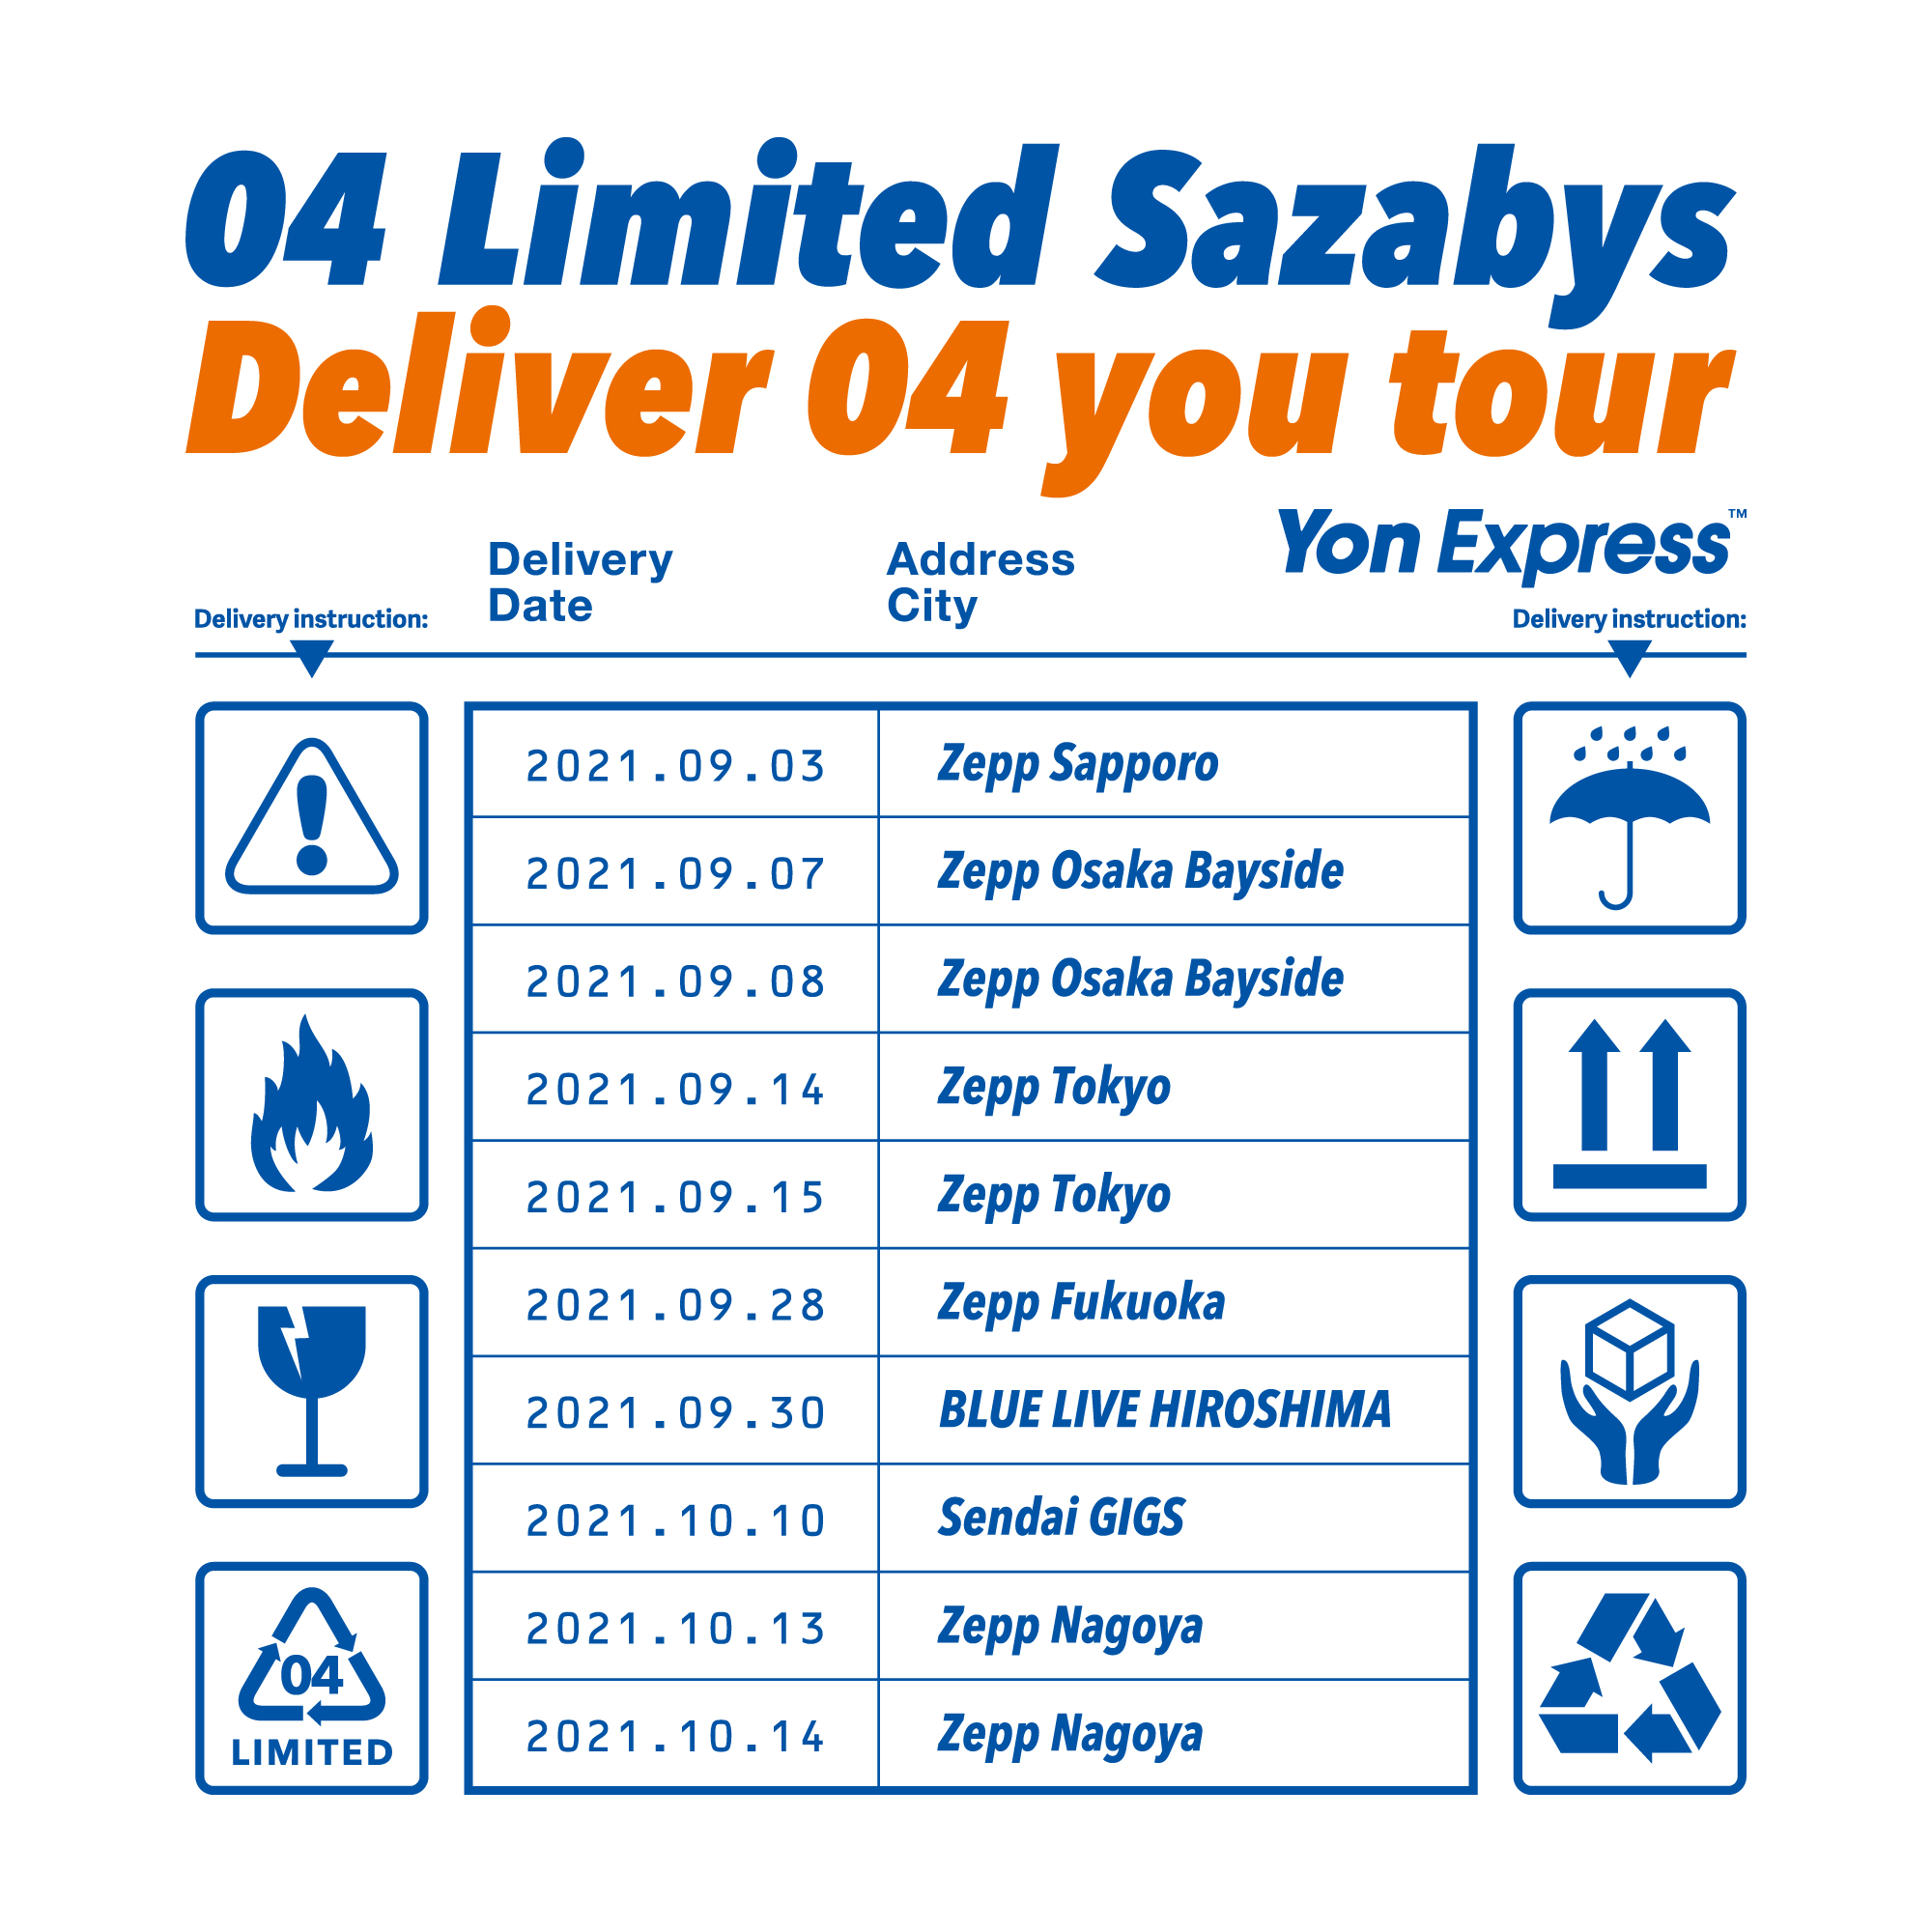 【愛知】Deliver 04 you tour (Zepp Nagoya)